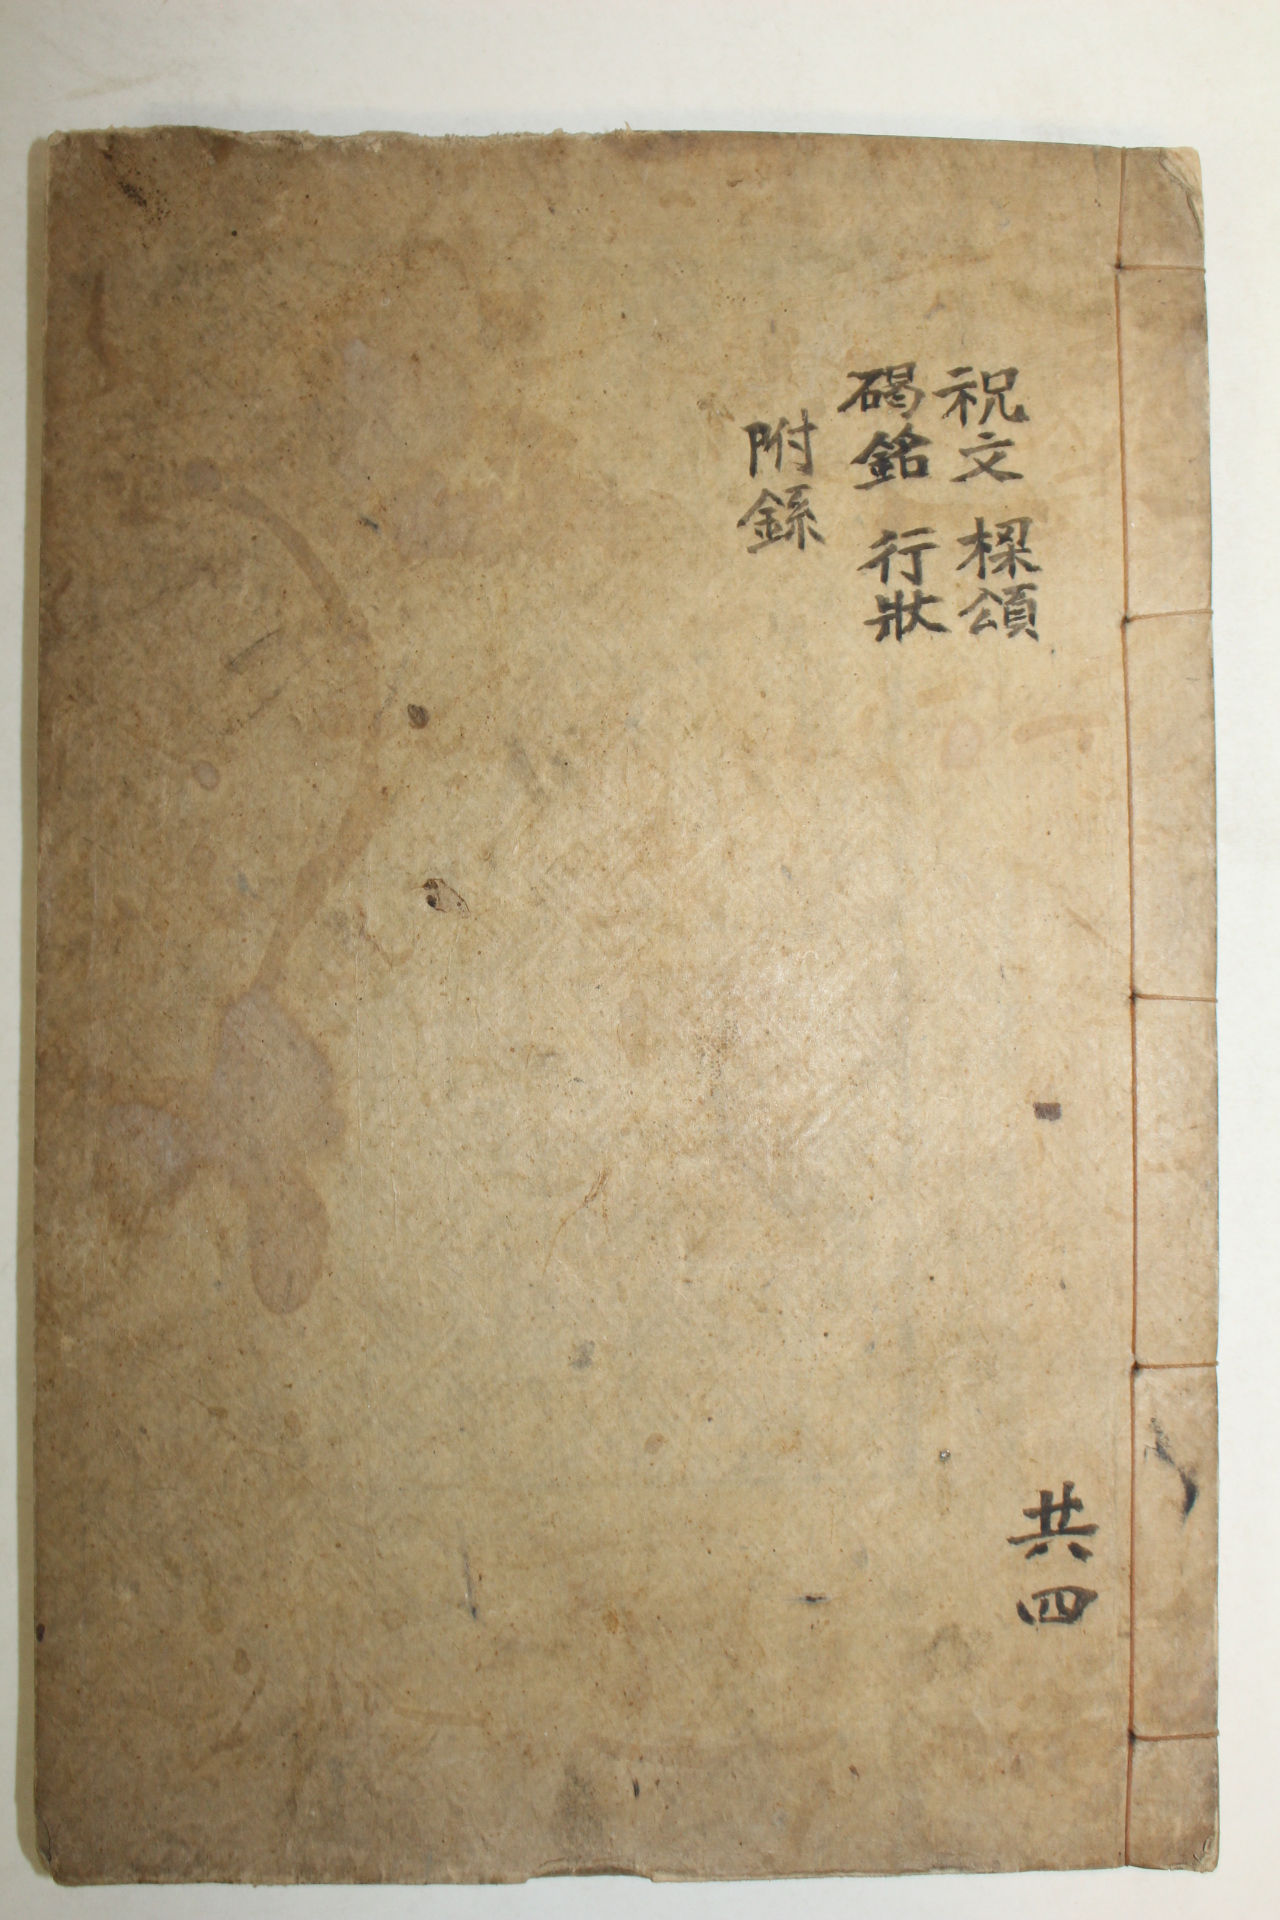 1947년 김만원(金萬源) 왕사문집(枉史文集)권7,8終  1책